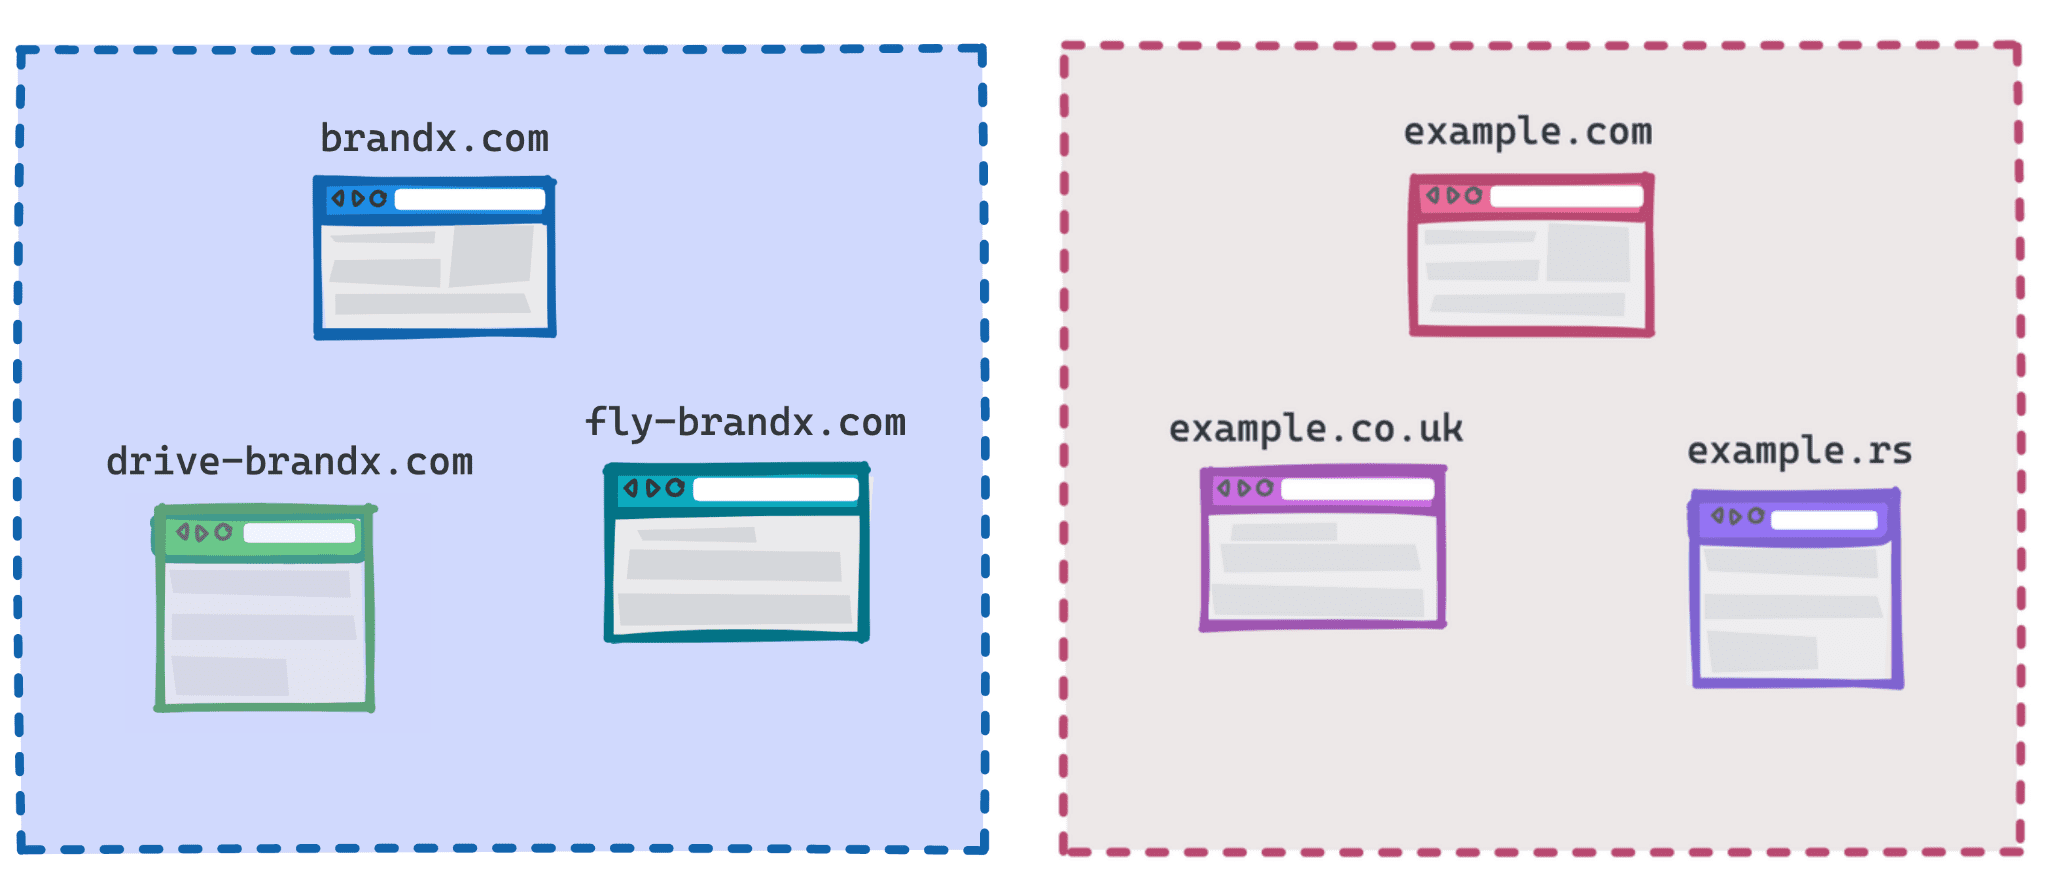 Diagram met brandx.com, fly-brandx.com en drive-brandx.com als één groep en example.com, example.rs, example.co.uk als een andere groep.